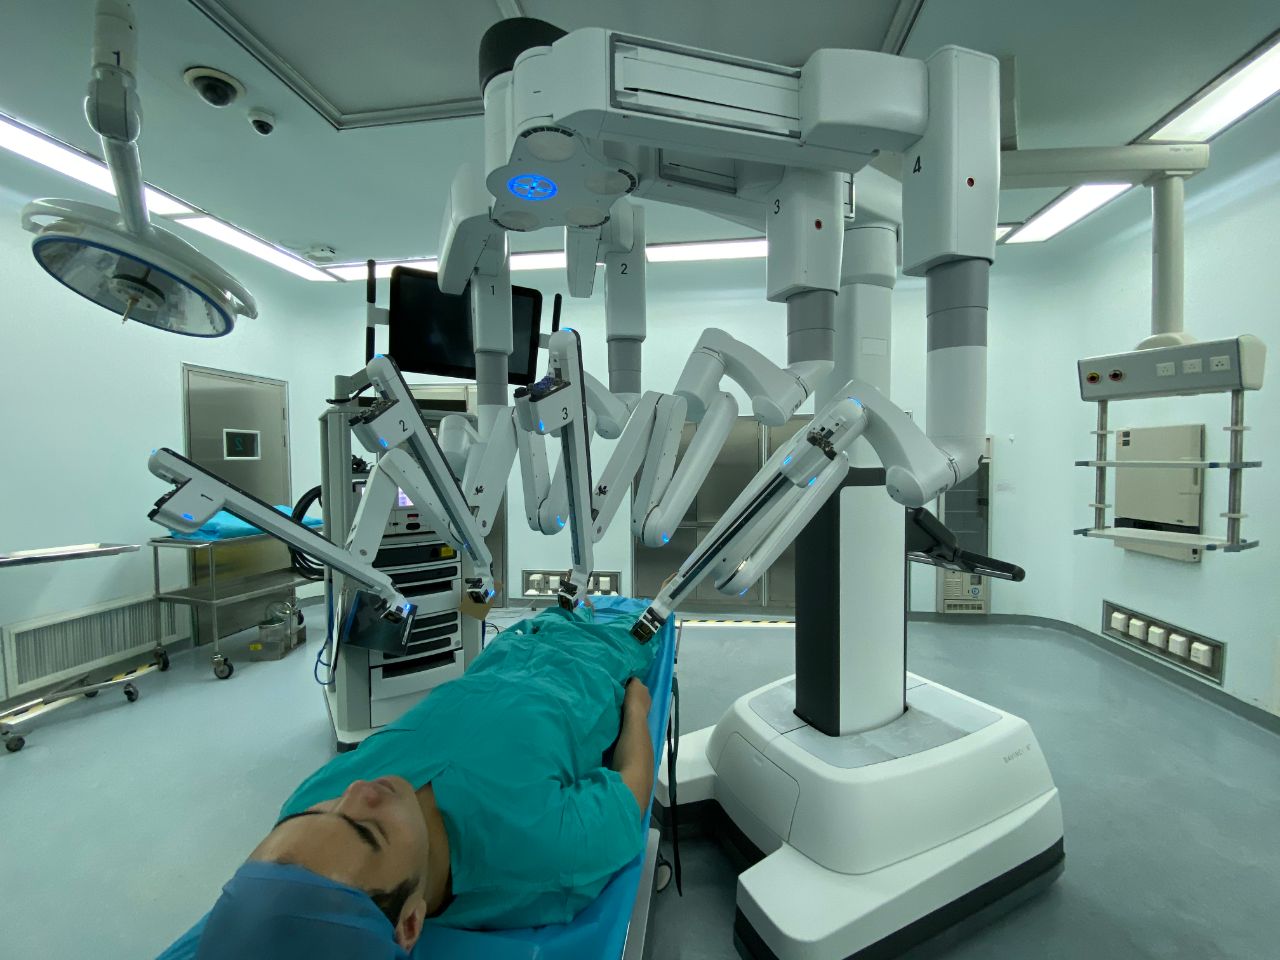 无锡市人民医院来了新员工达芬奇手术机器人